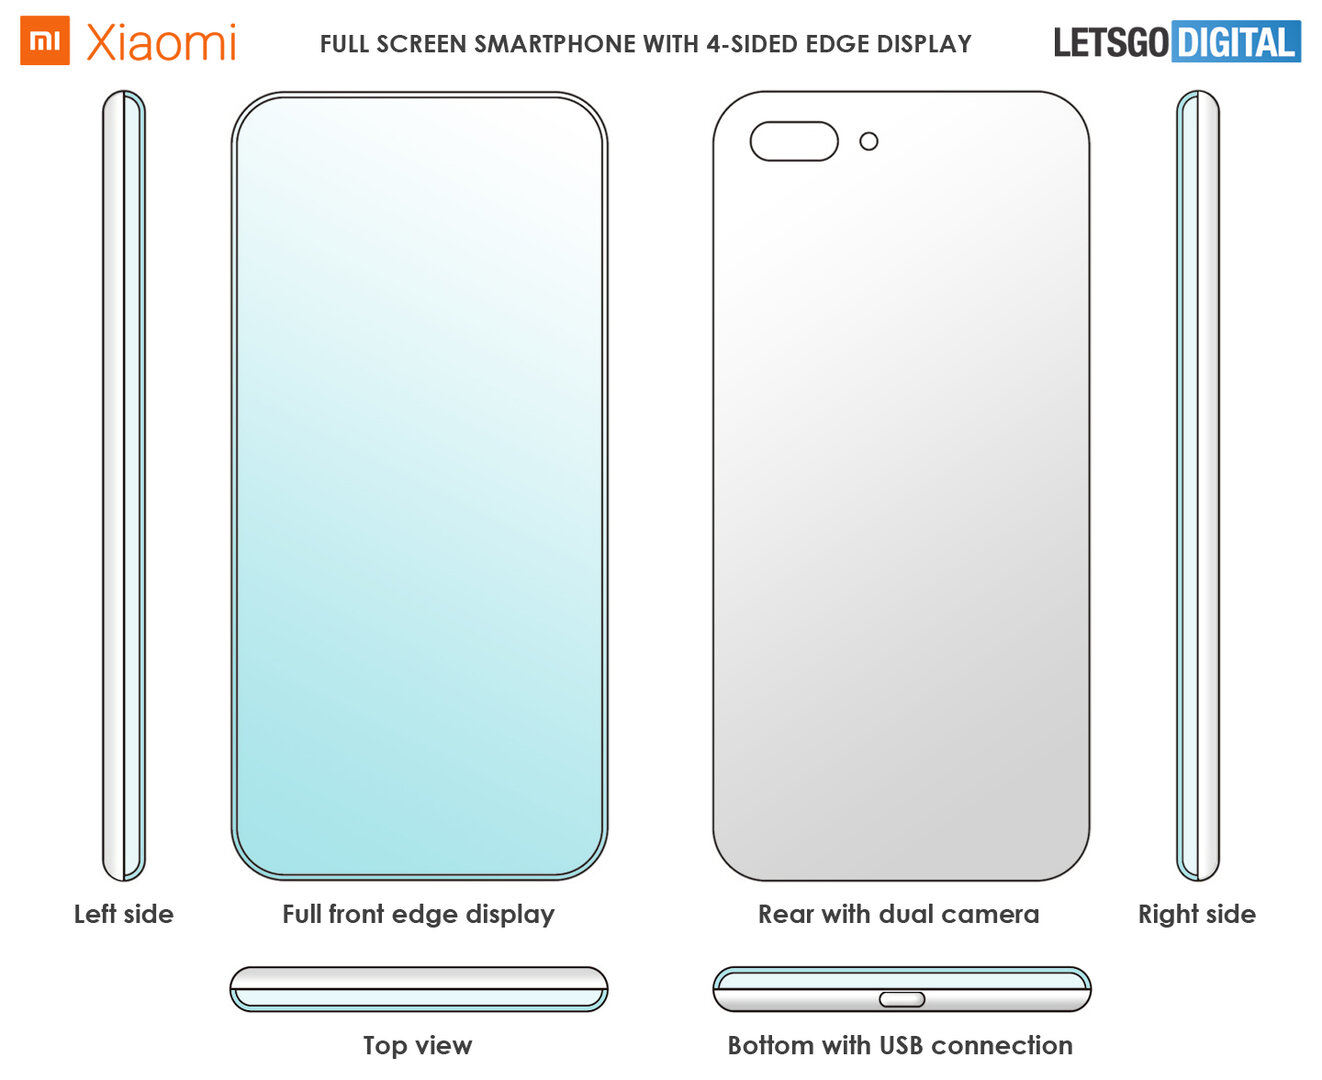 Zeichnungen des Xiaomi-Smartphones aus dem Patent